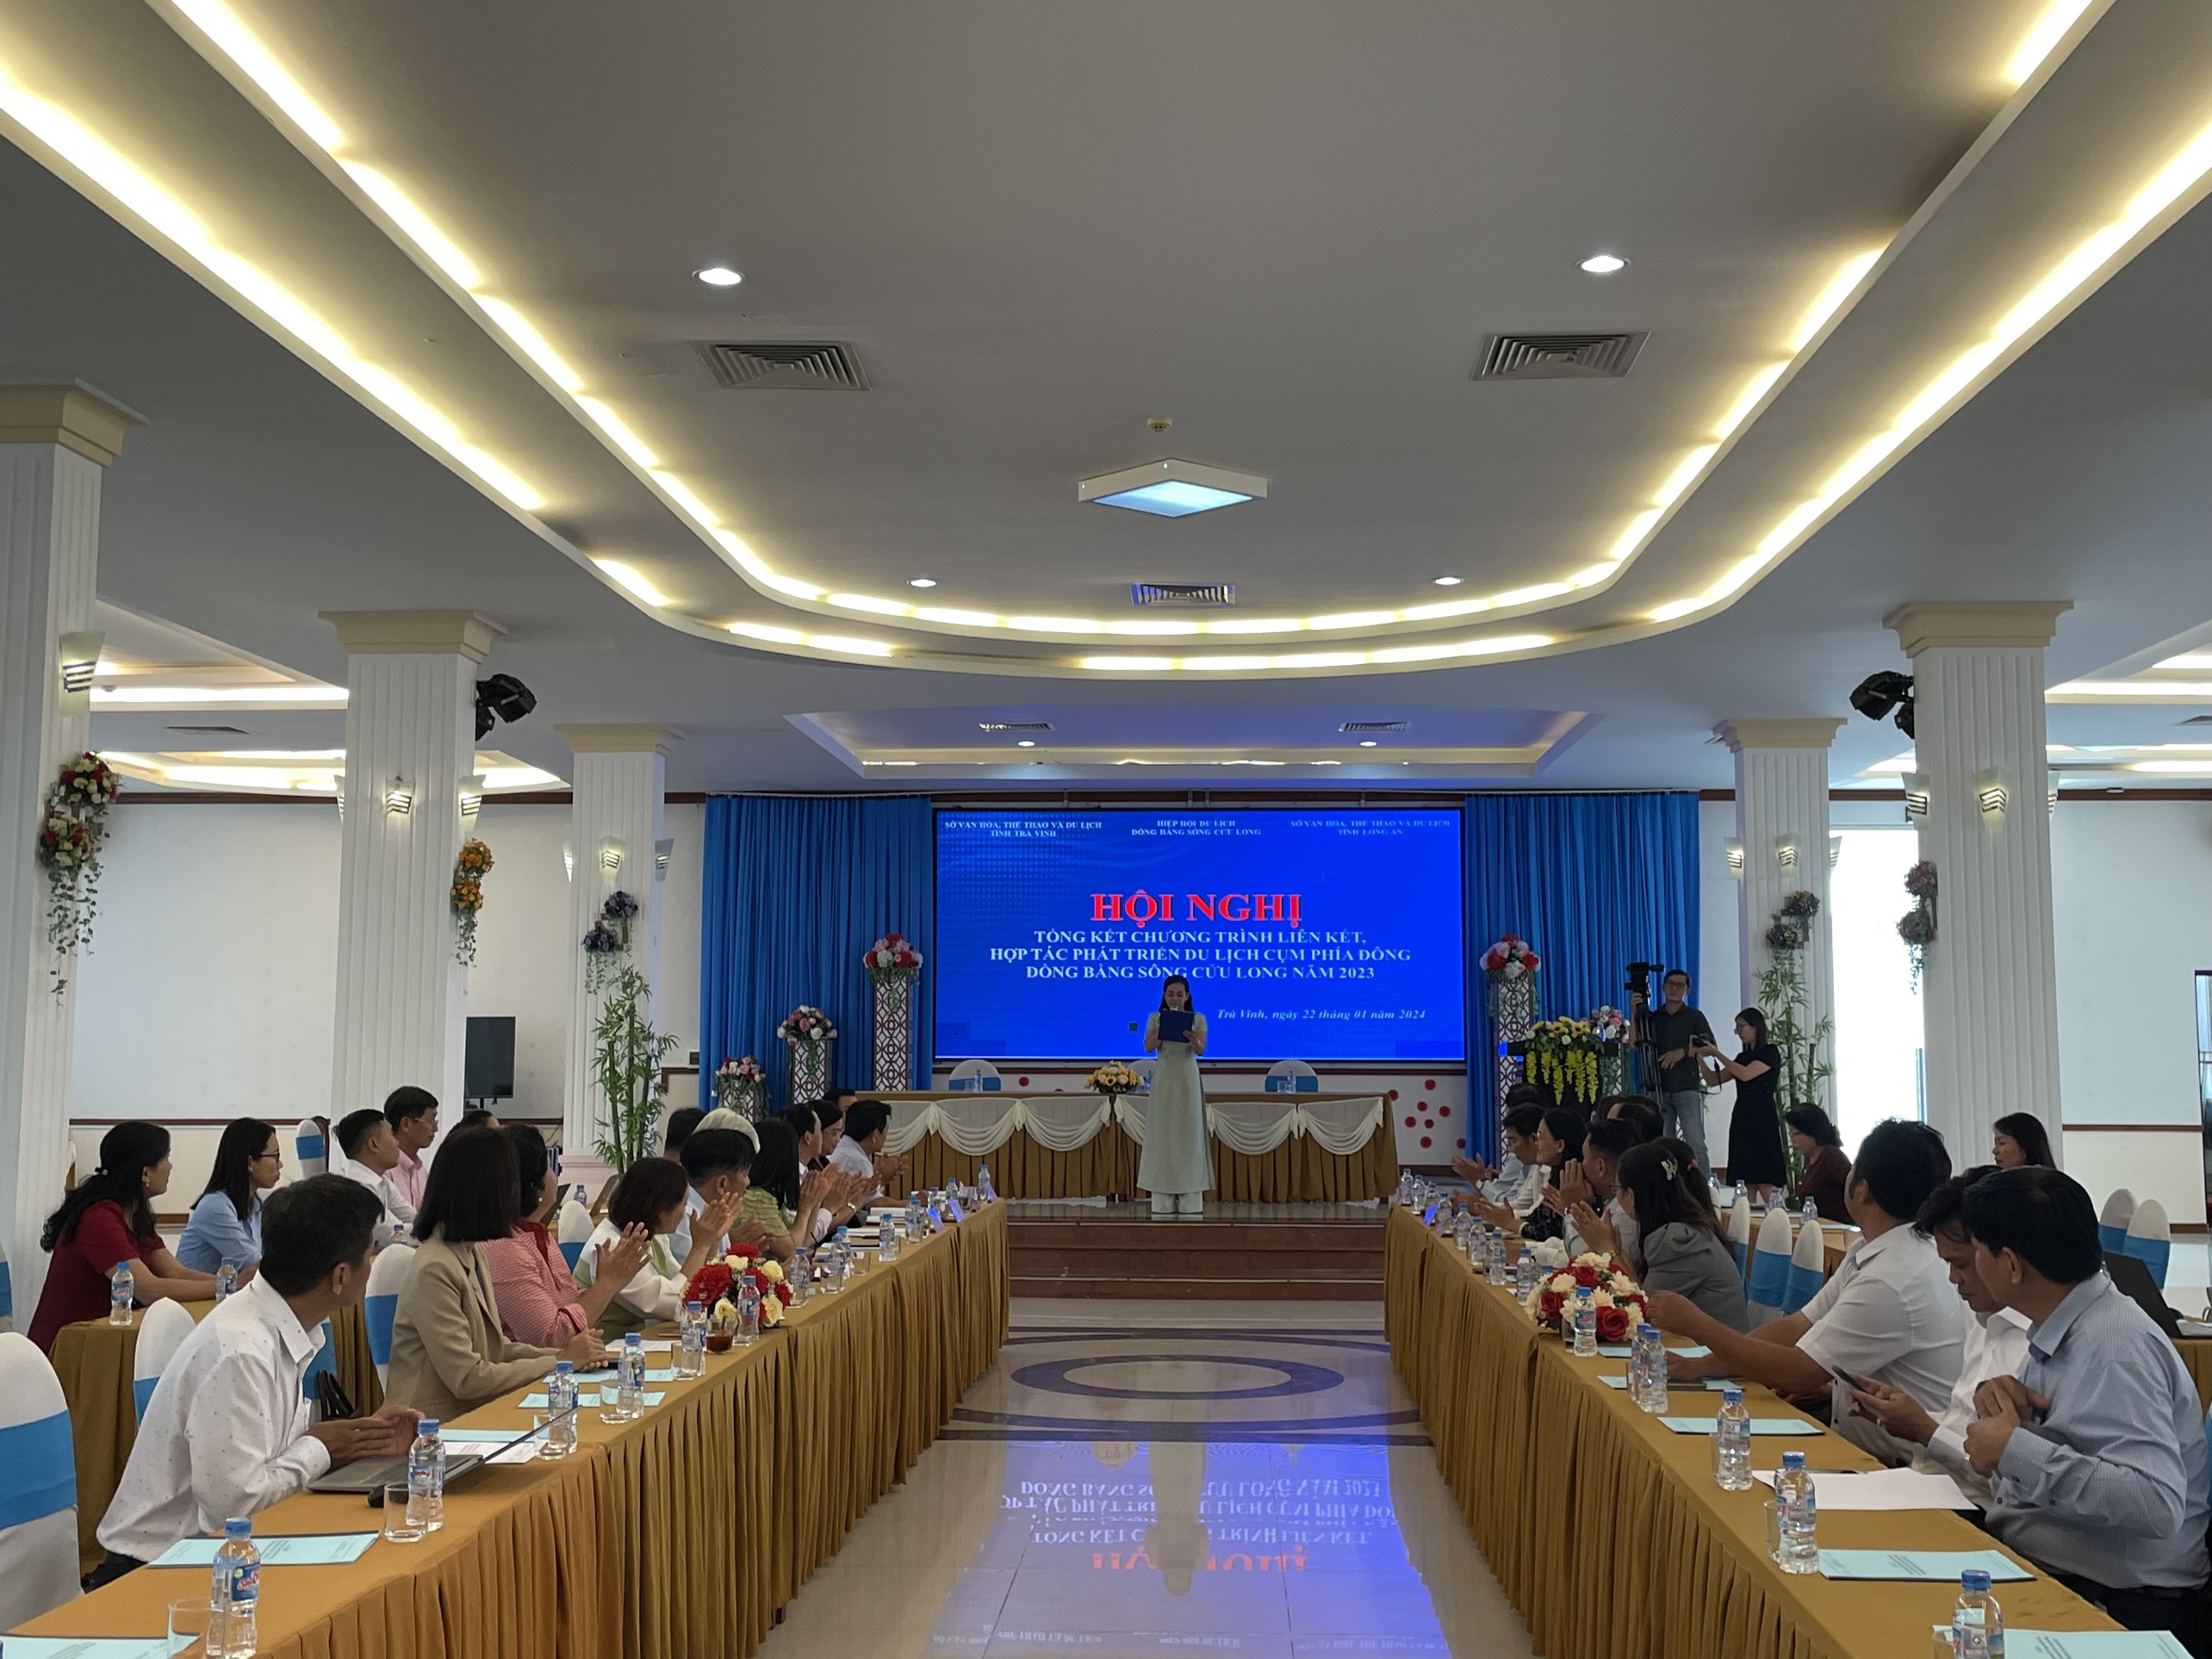 Hội nghị tổng kết chương trình liên kết, hợp tác phát triển du lịch Cụm phía Đông đồng bằng sông Cửu Long năm 2023 tại Trà Vinh